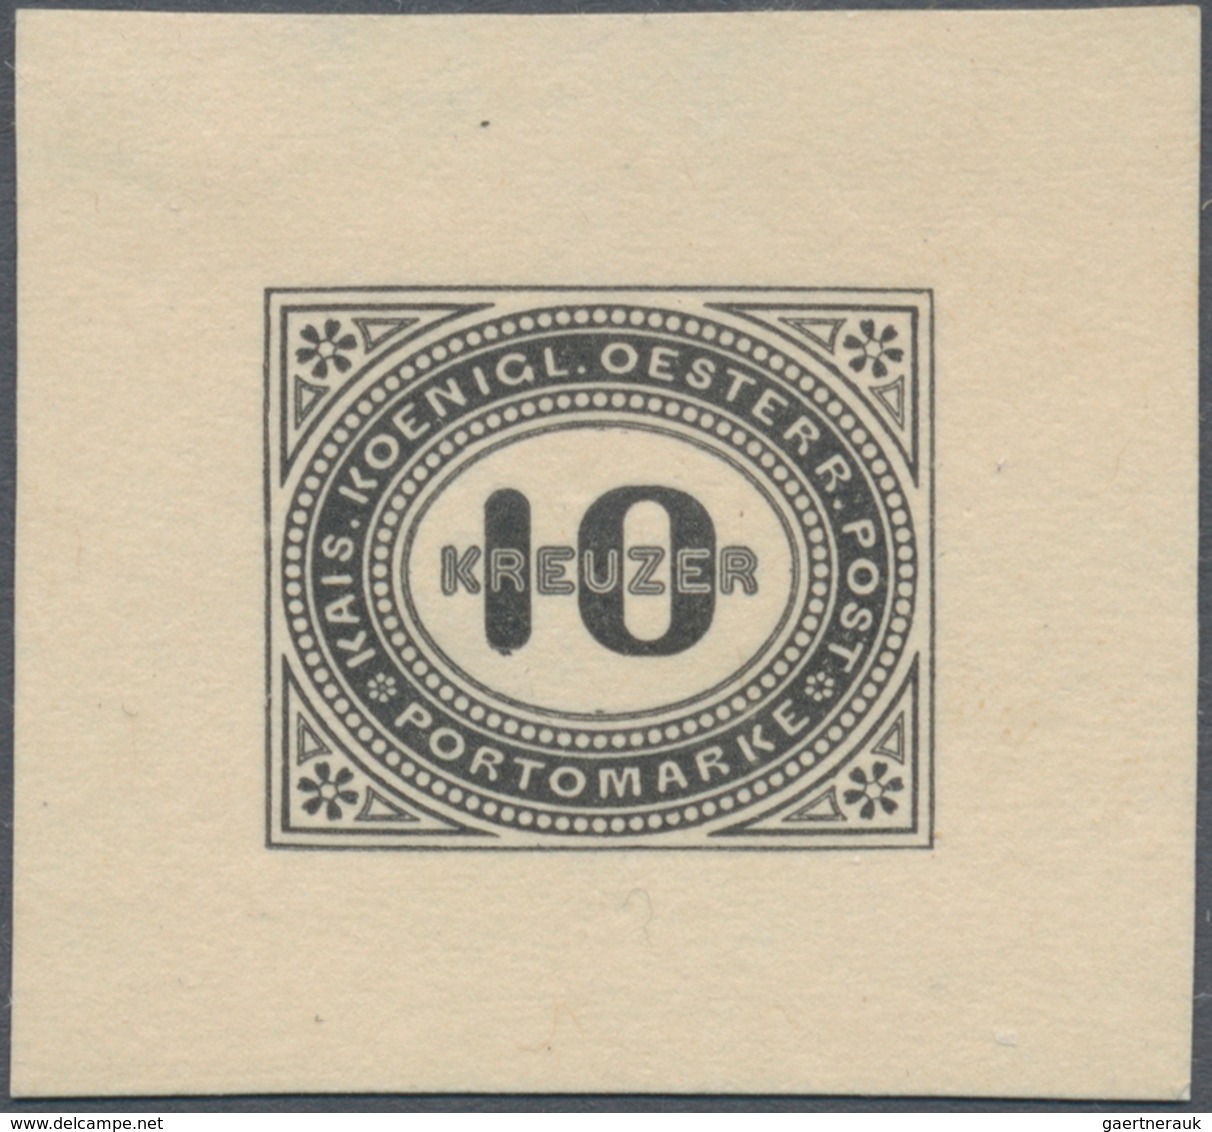 Österreich - Portomarken: 1894/1895, 1 Kr. bis 50 Kr., kompletter Satz von neun Werten je als Einzel